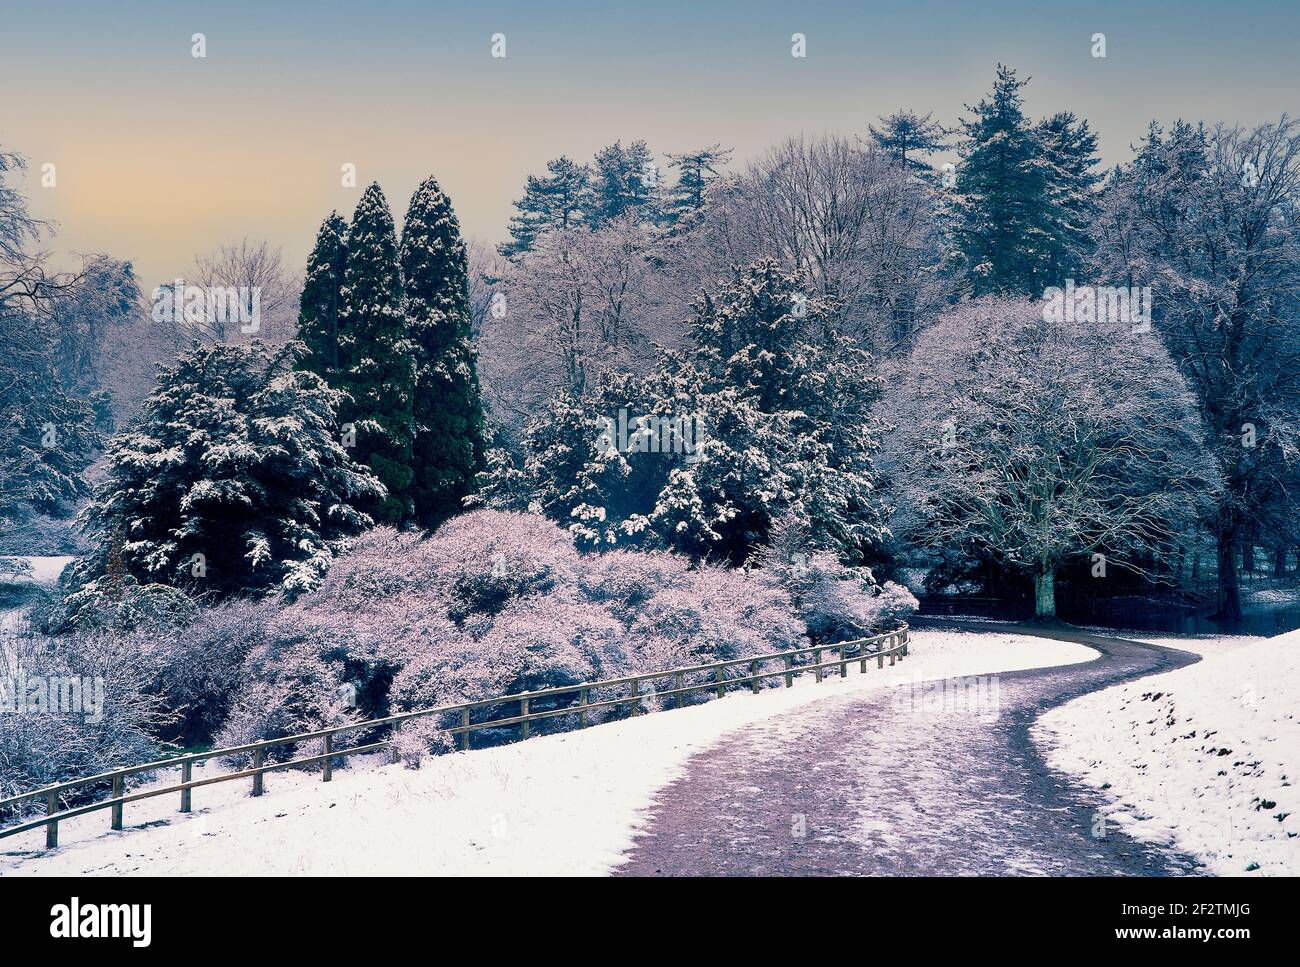 Una scena invernale nel cotryside inglese con un albero coperto di neve Foto Stock